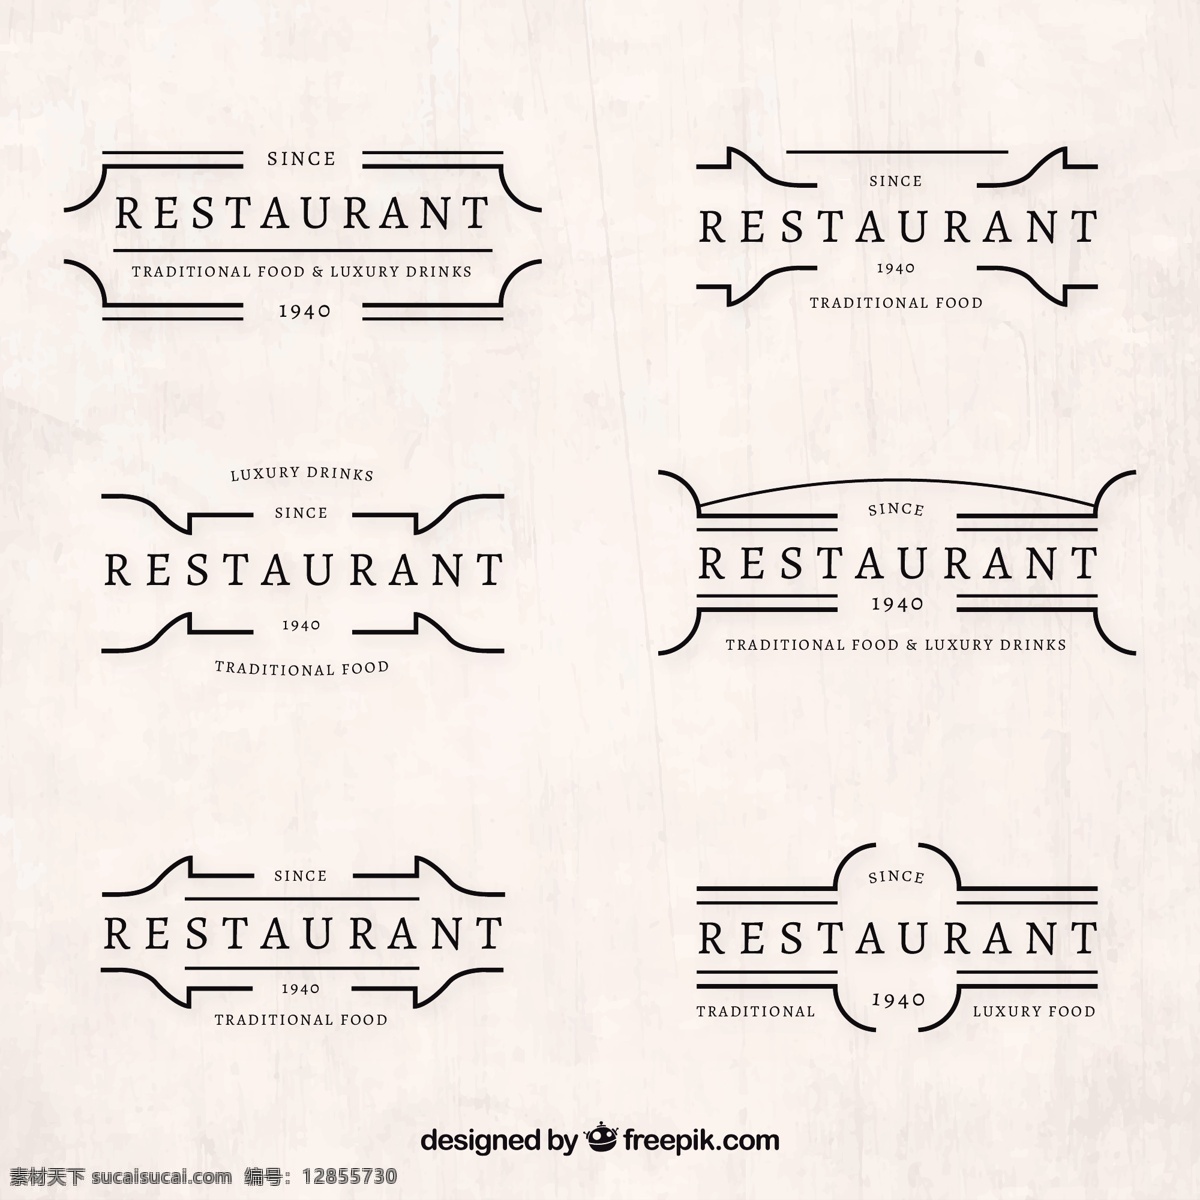 复古 收藏 餐厅 标识 标志 酿酒 食品 复古的标志 企业 公司 企业形象 复古的徽章 食品标识 餐厅标志 身份 复古徽章 复古的图案 经典复古 徽章 公司logo 白色